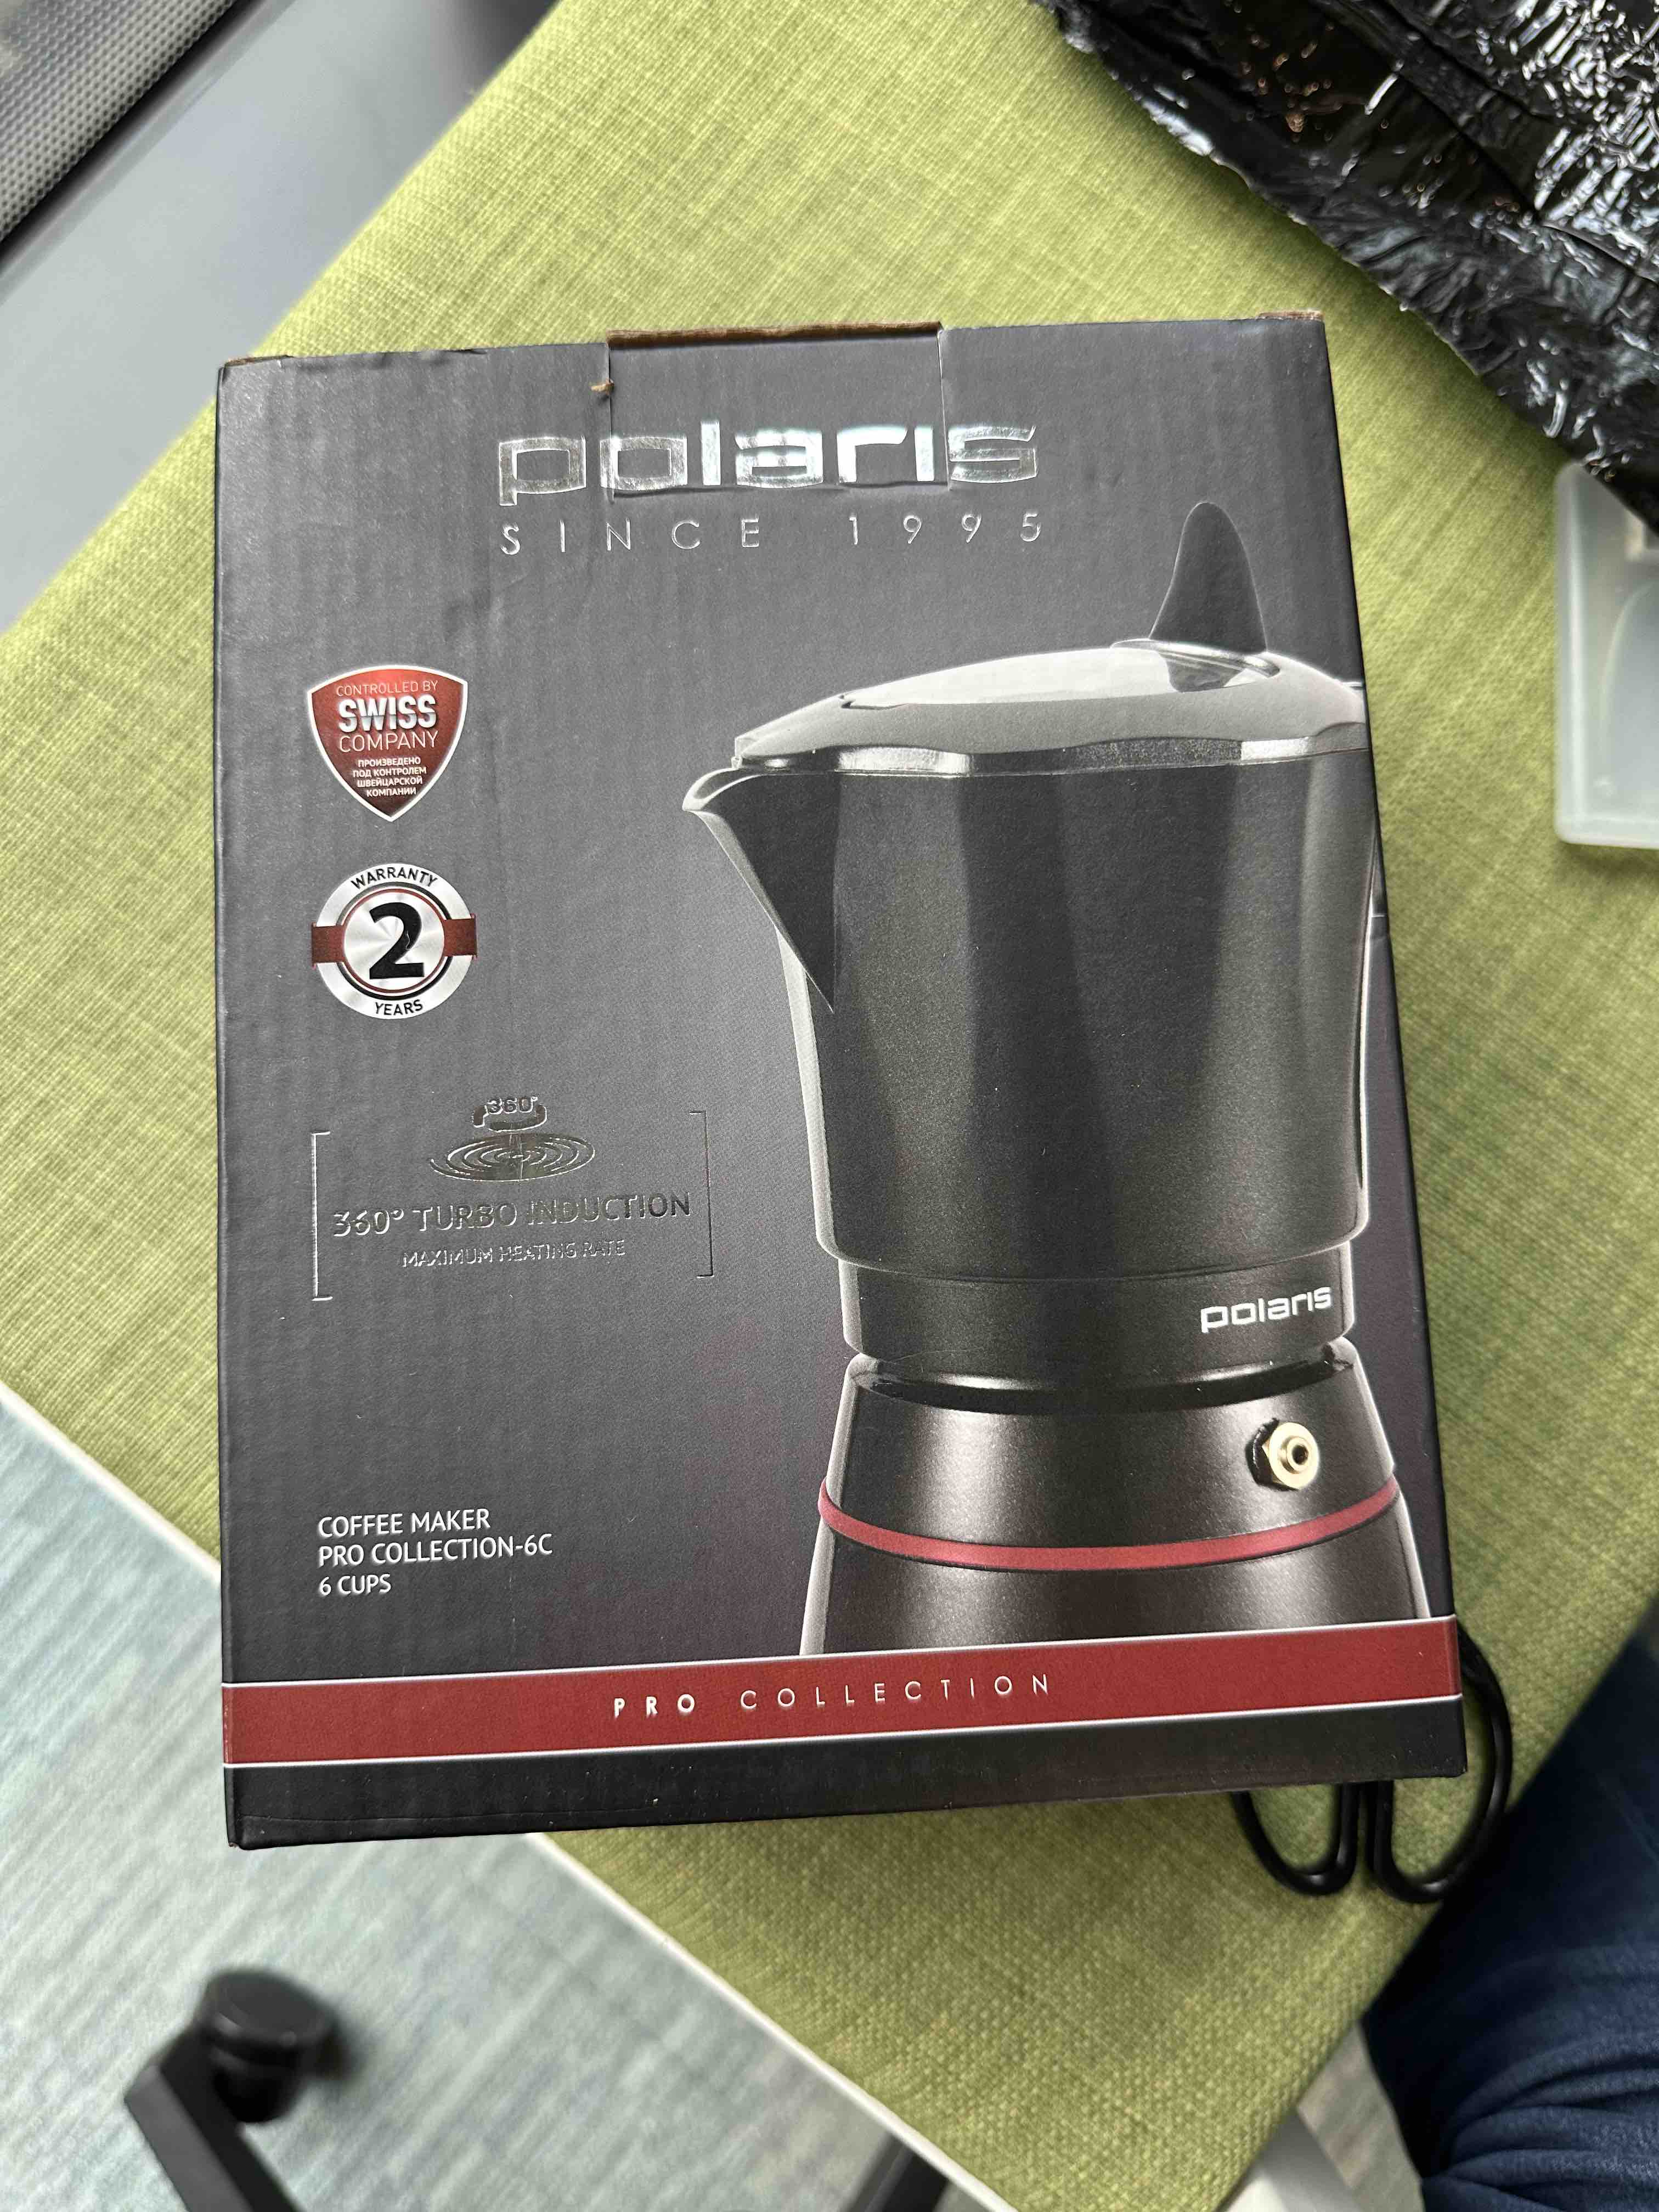 Гейзерная кофеварка Polaris PRO collection-6C 450 мл для индукционной .